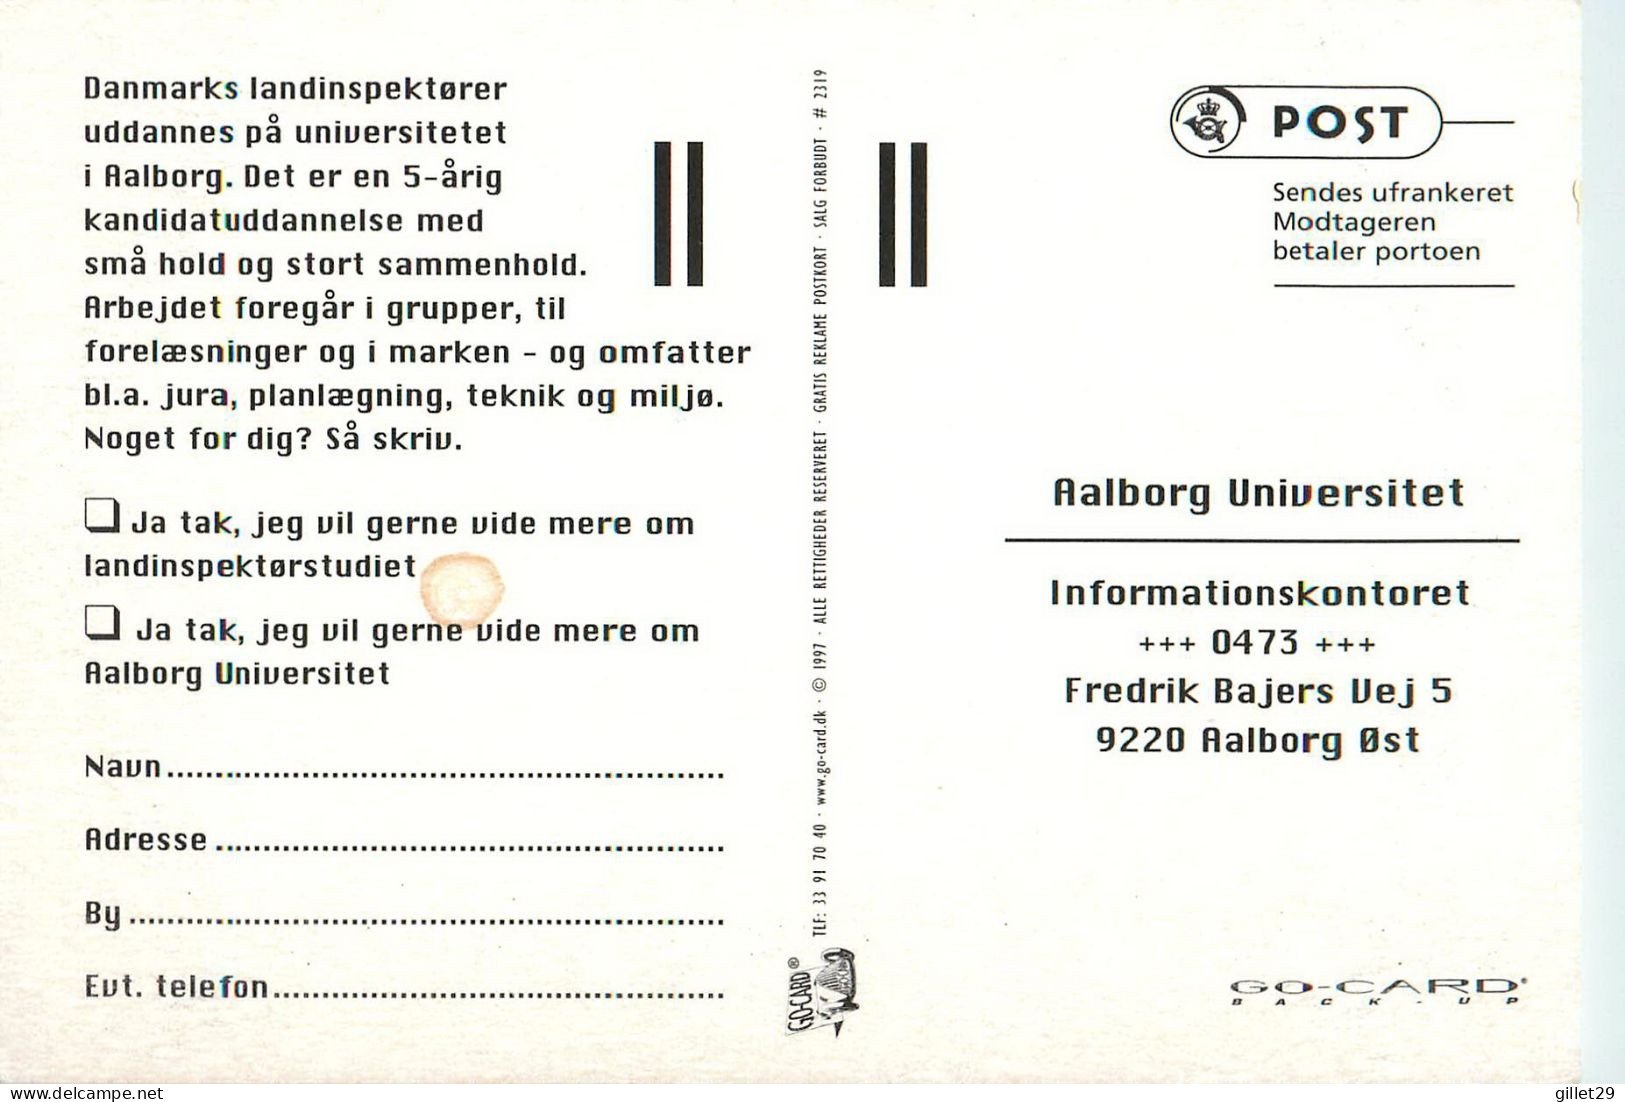 ADVERTISING, PUBLICITÉ - INSPECTEURS DES TERRES DU DANEMARK - GO-CARD 1997 No 2319 - - Publicité